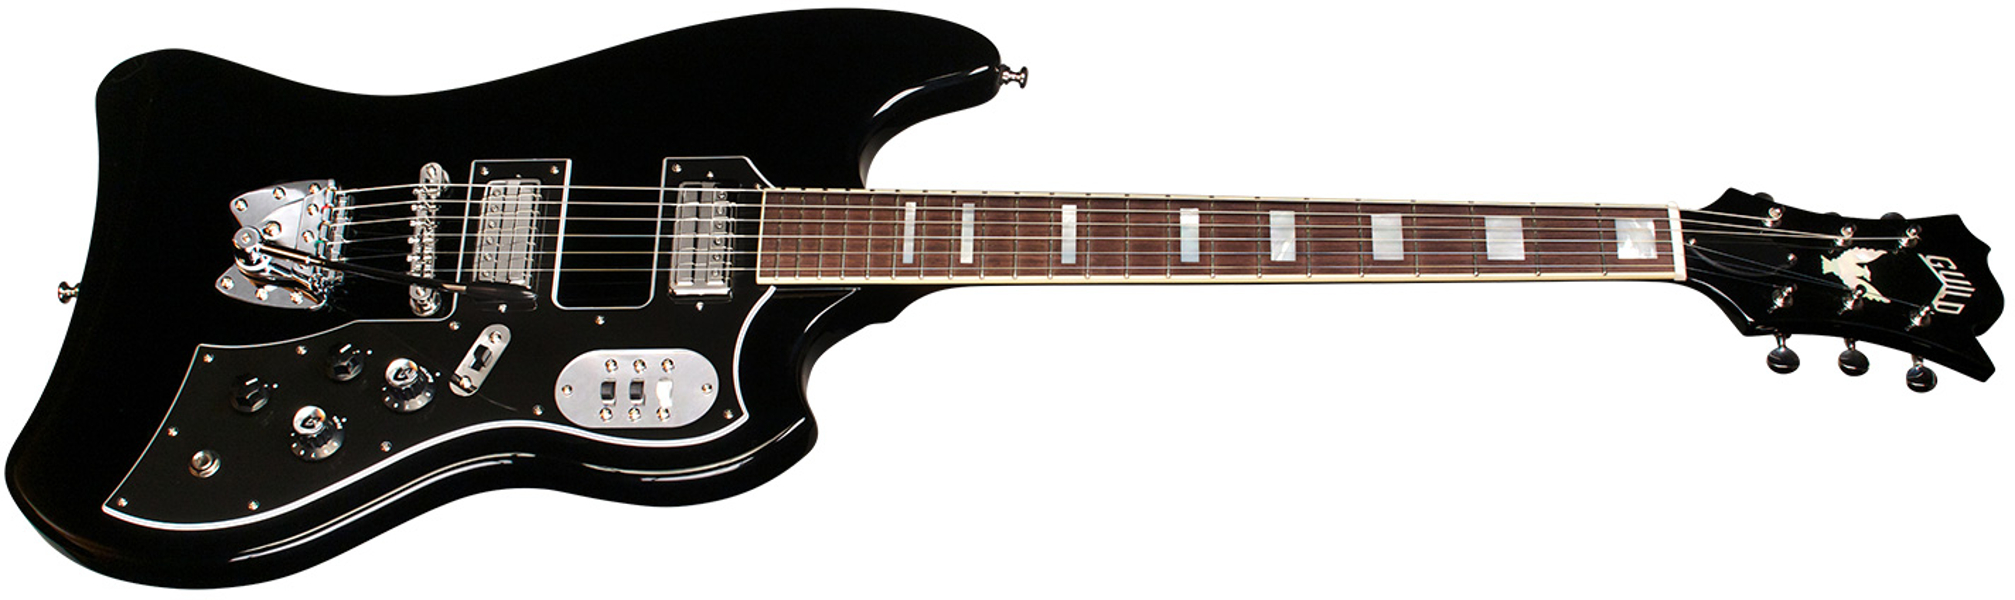 Guild S-200 T-bird - Noir - Retro-rock elektrische gitaar - Variation 2